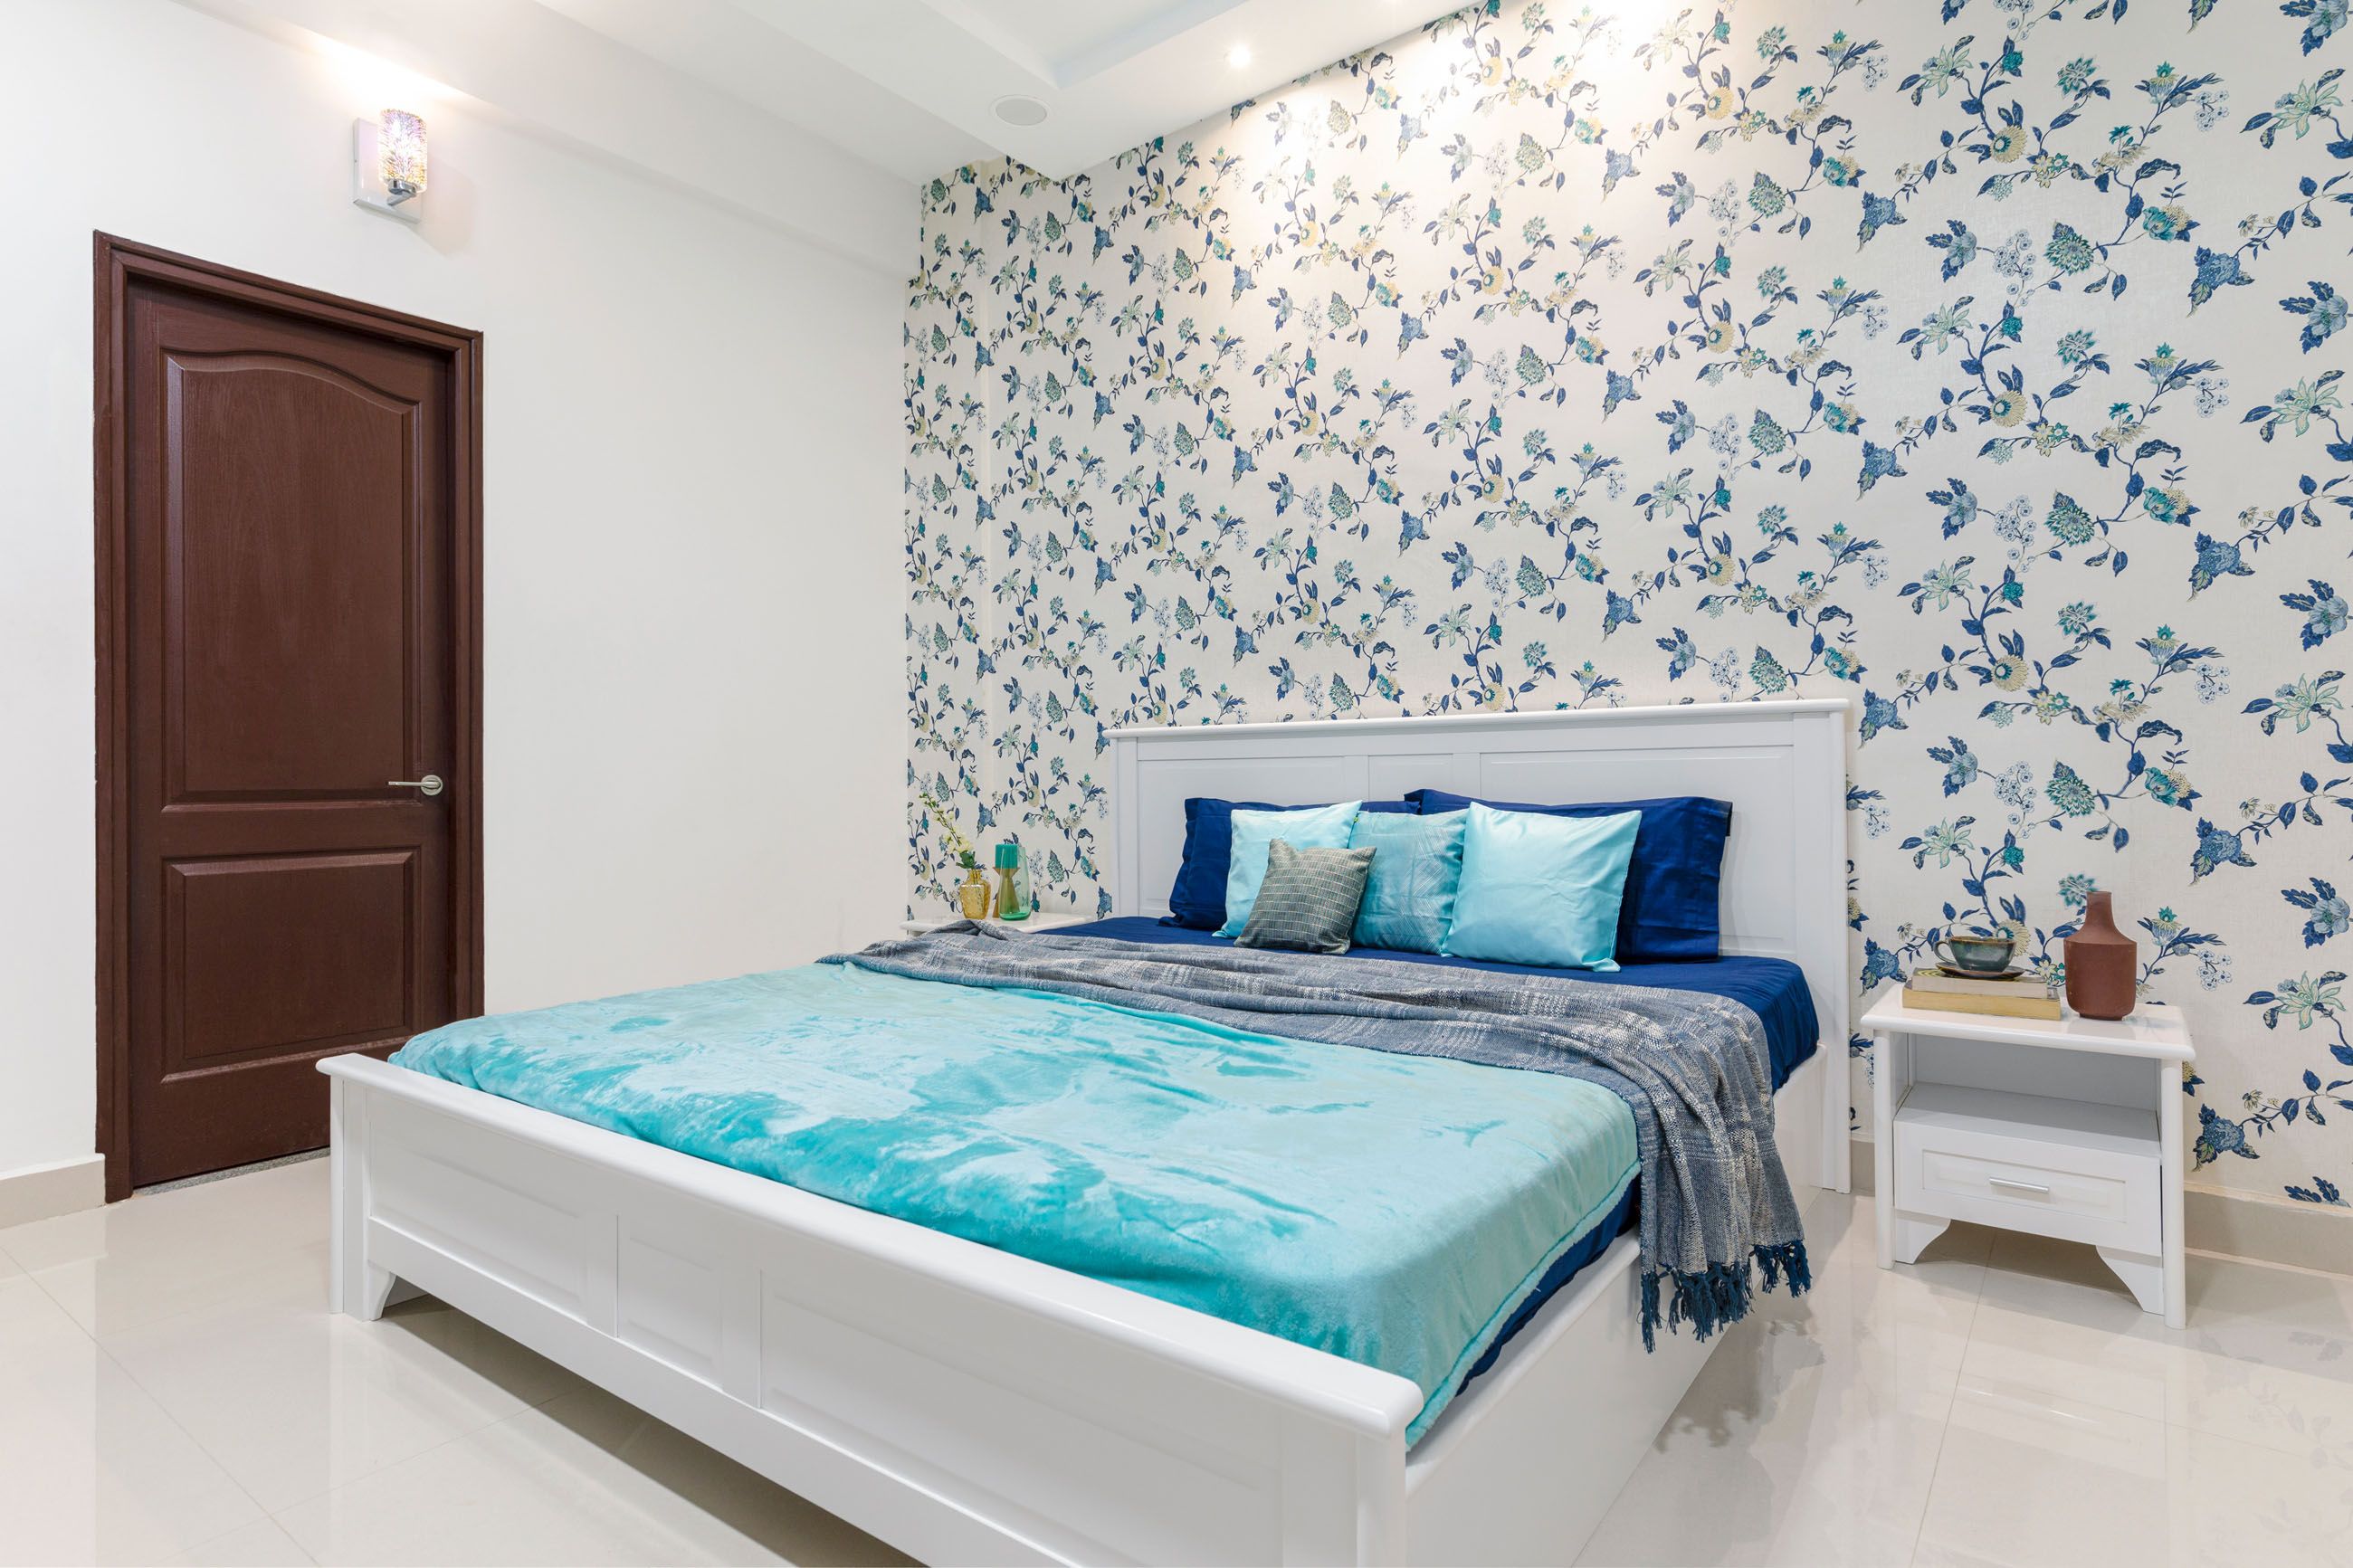 Scandinavian Guest Bedroom Design With Floral Blue Wallpaper